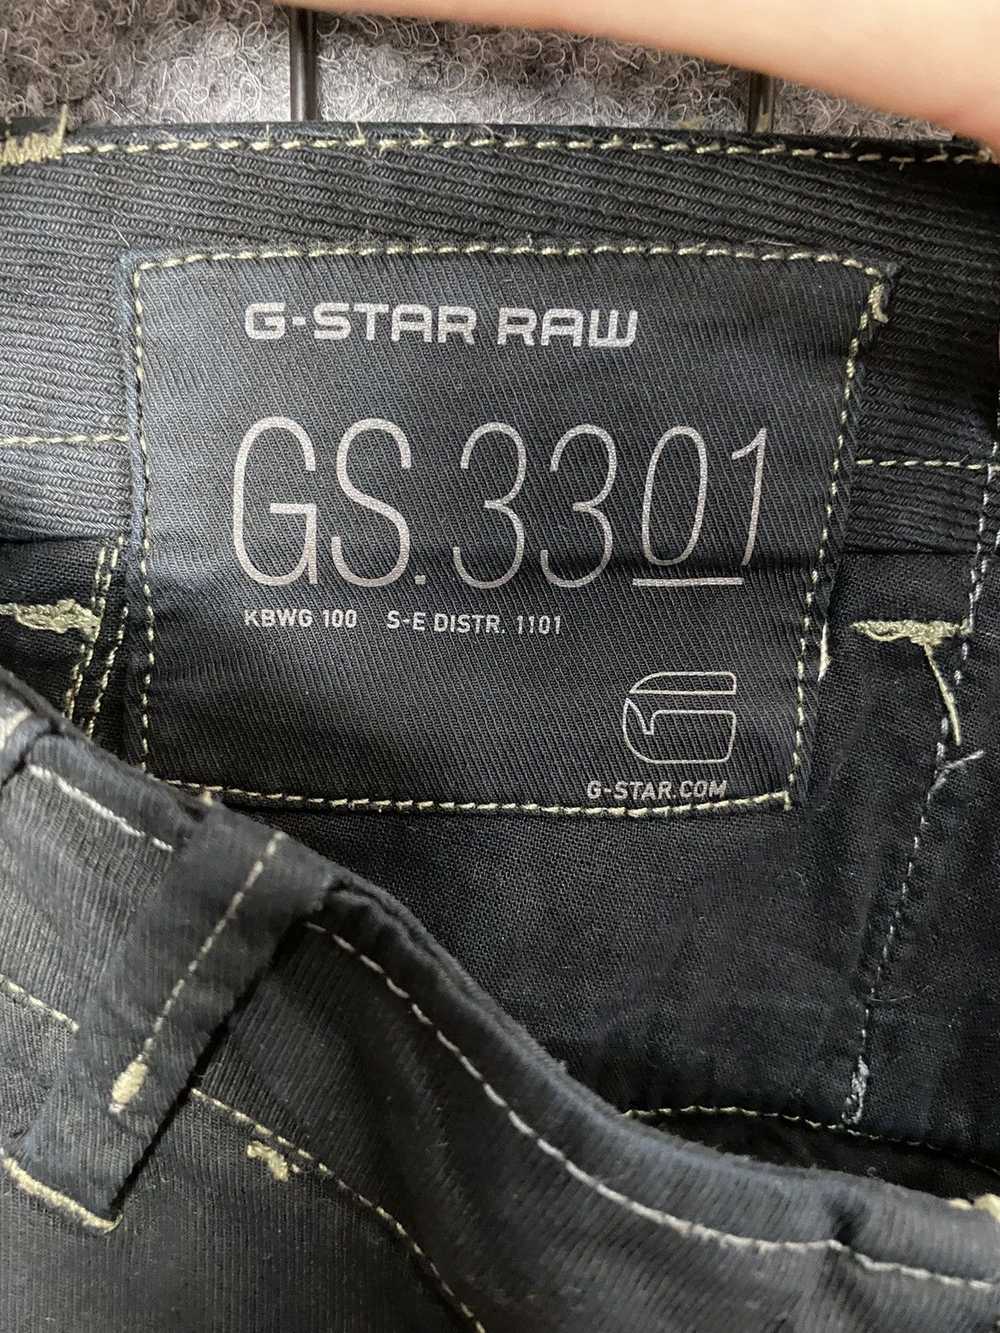 G Star Raw × Gstar × Streetwear G Star Raw GS 330… - image 10